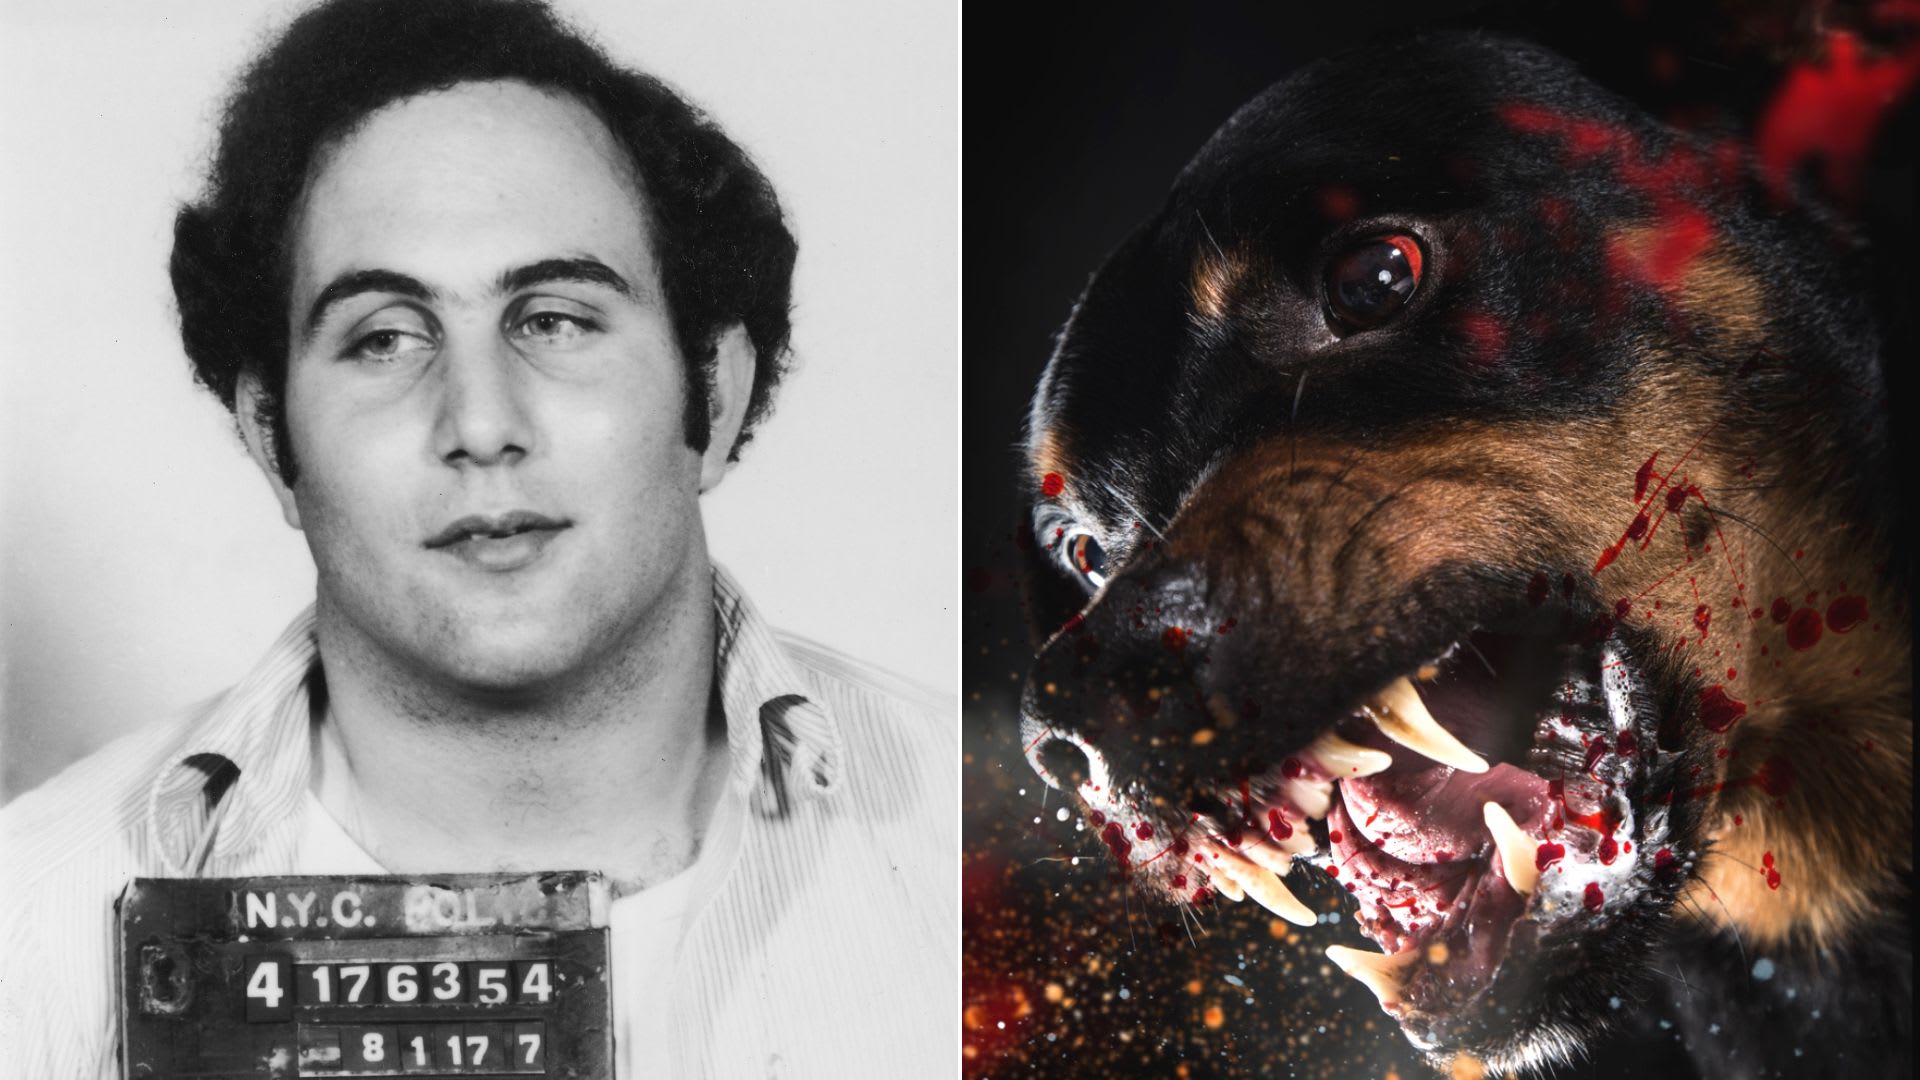 Démonický pes Berkowitze k vraždám samozřejmě nenavedl